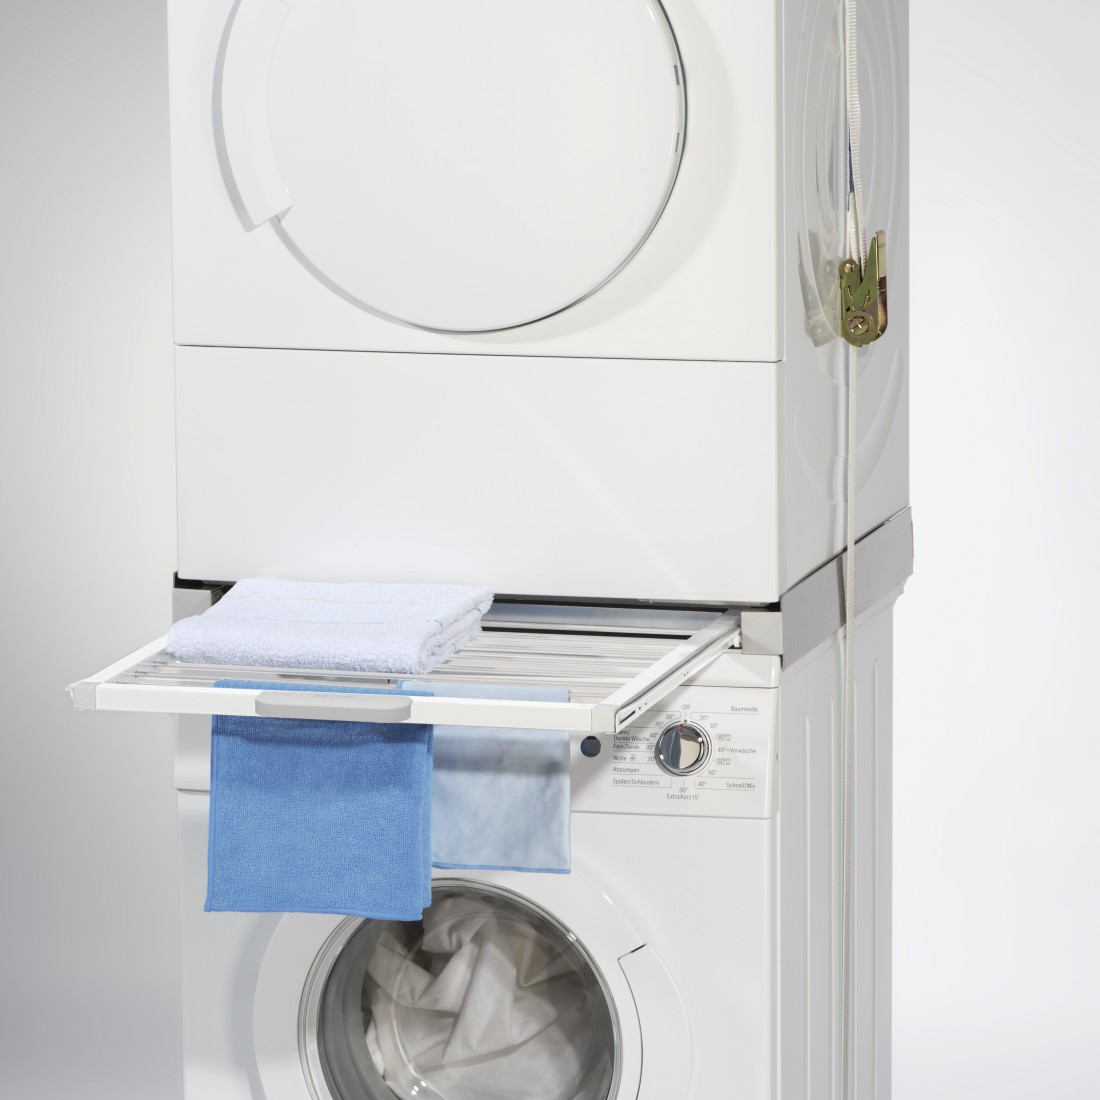 awx5 Druckfähige Anwendung 5 - Xavax, Zwischenbausatz für Waschmaschinen/Trockner, integrierter Wäscheständer